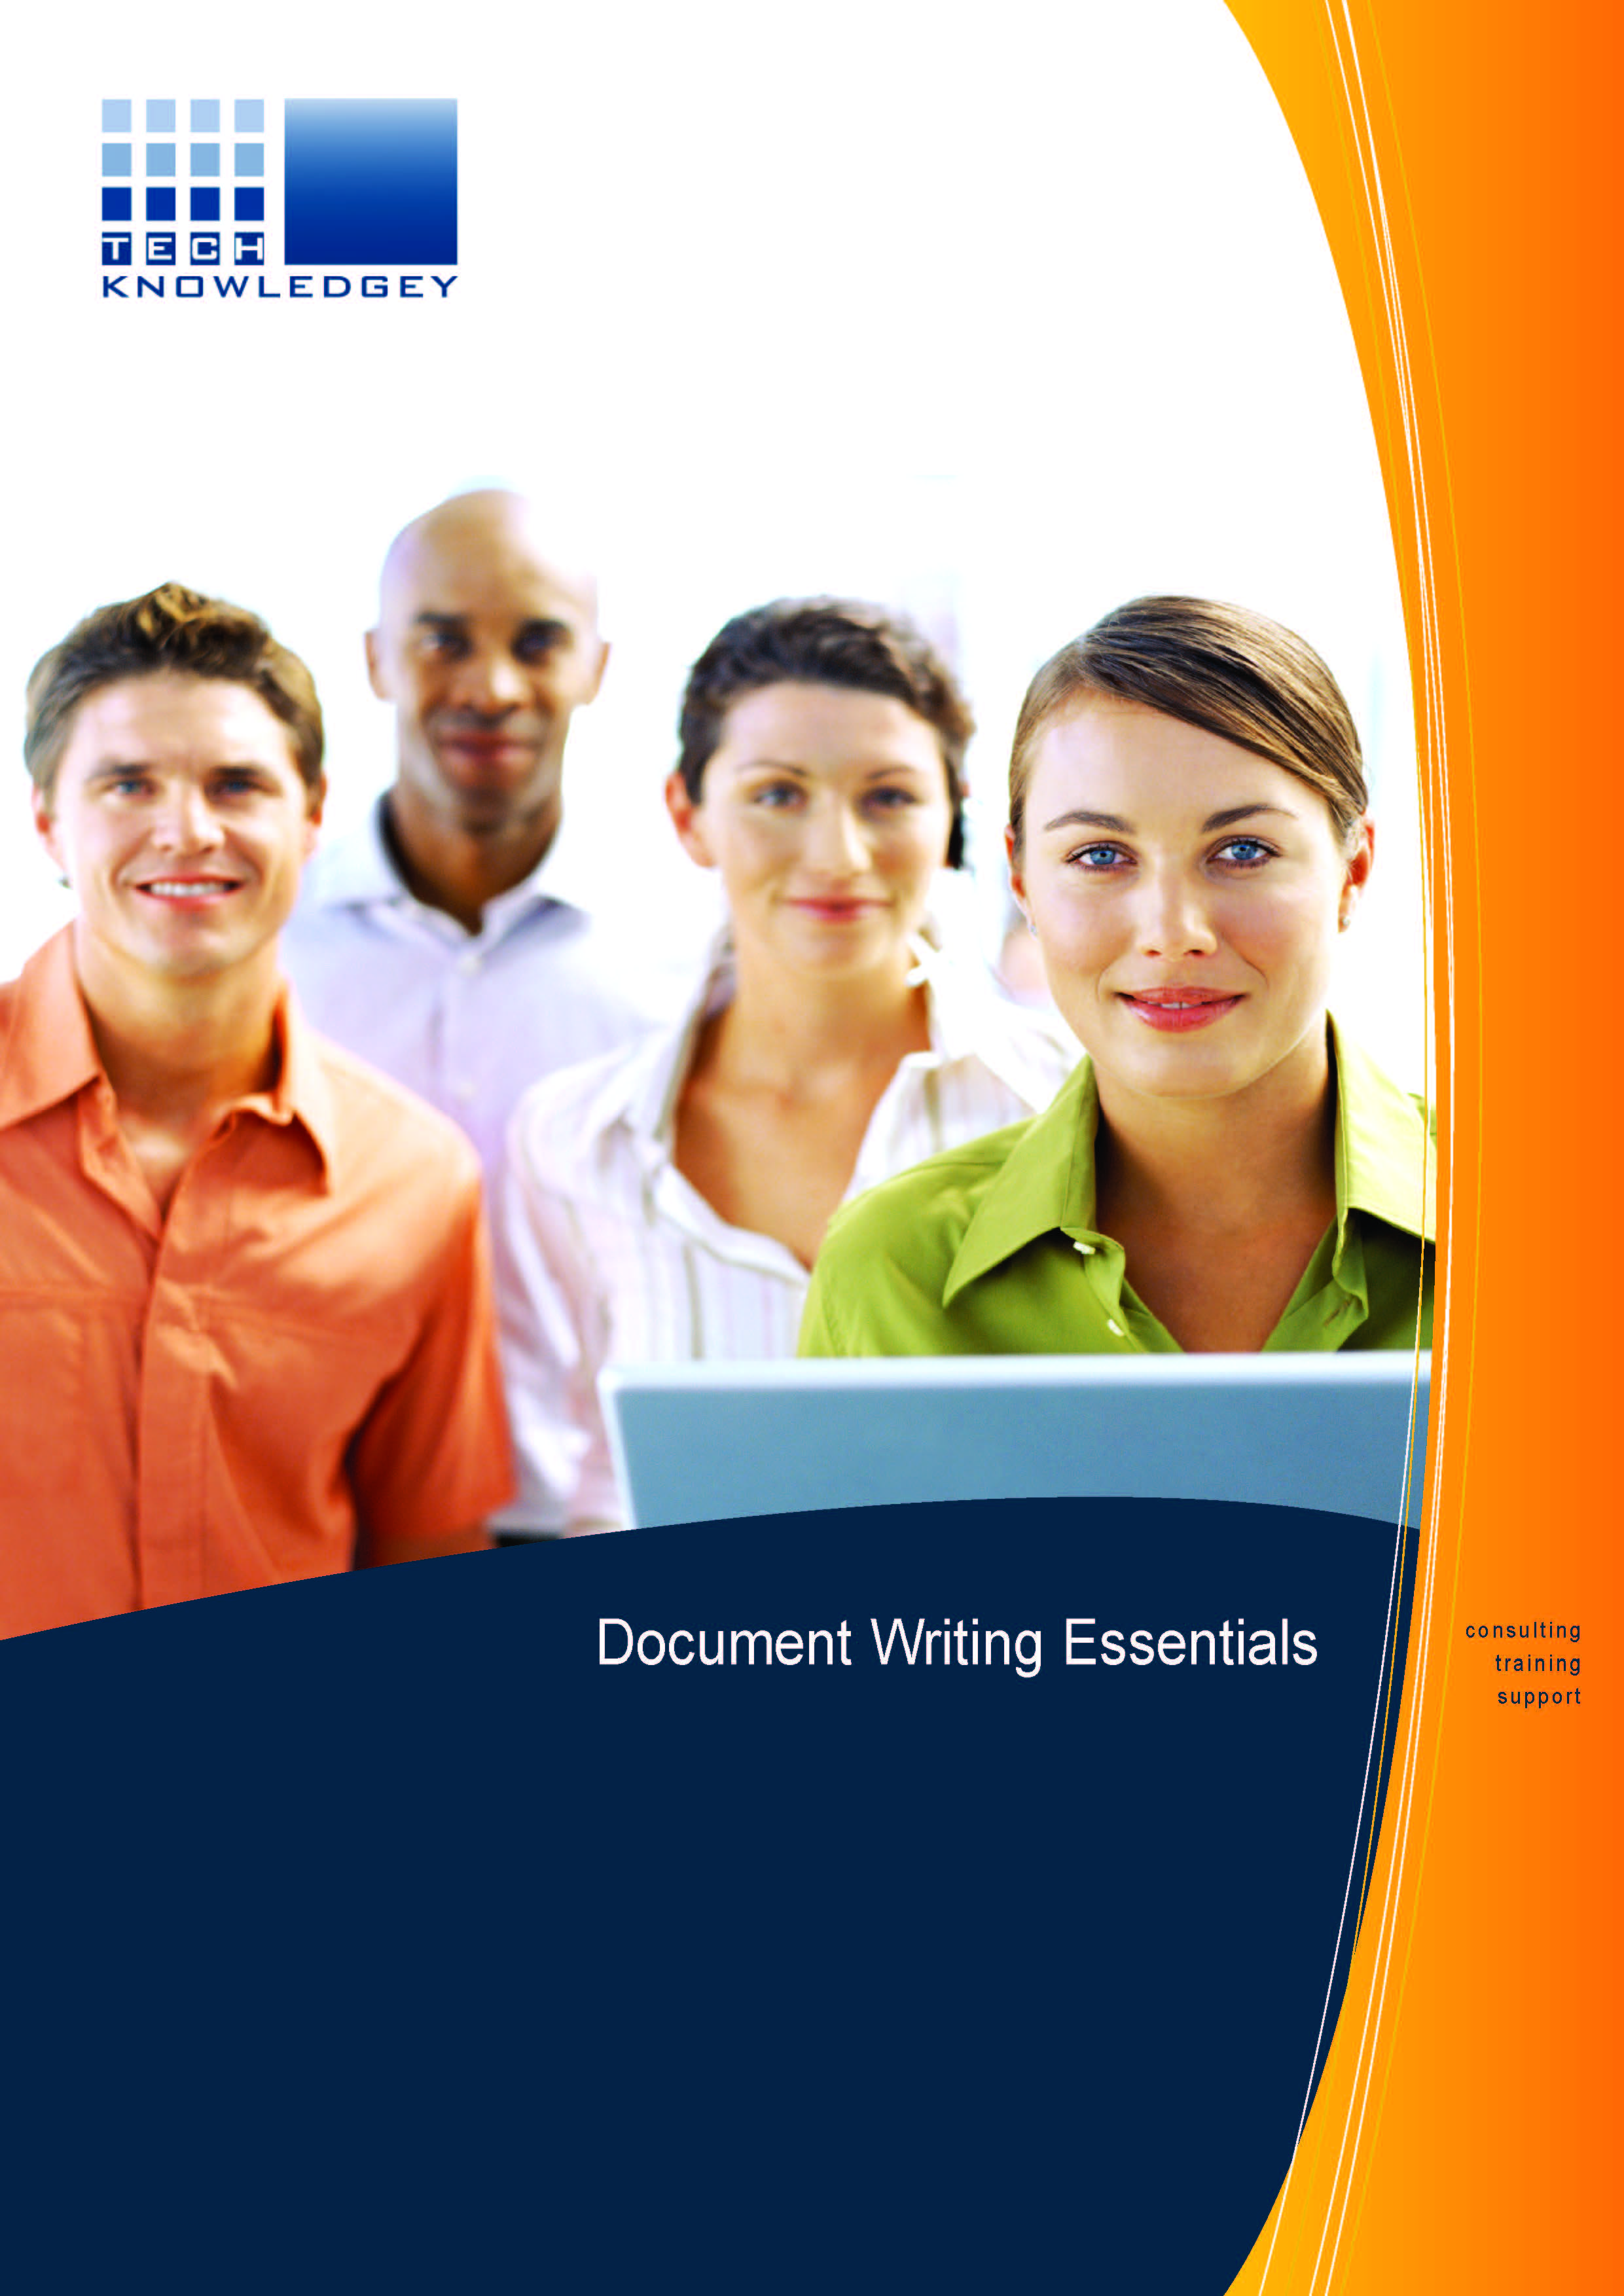 Document Writing Essentials Courseware